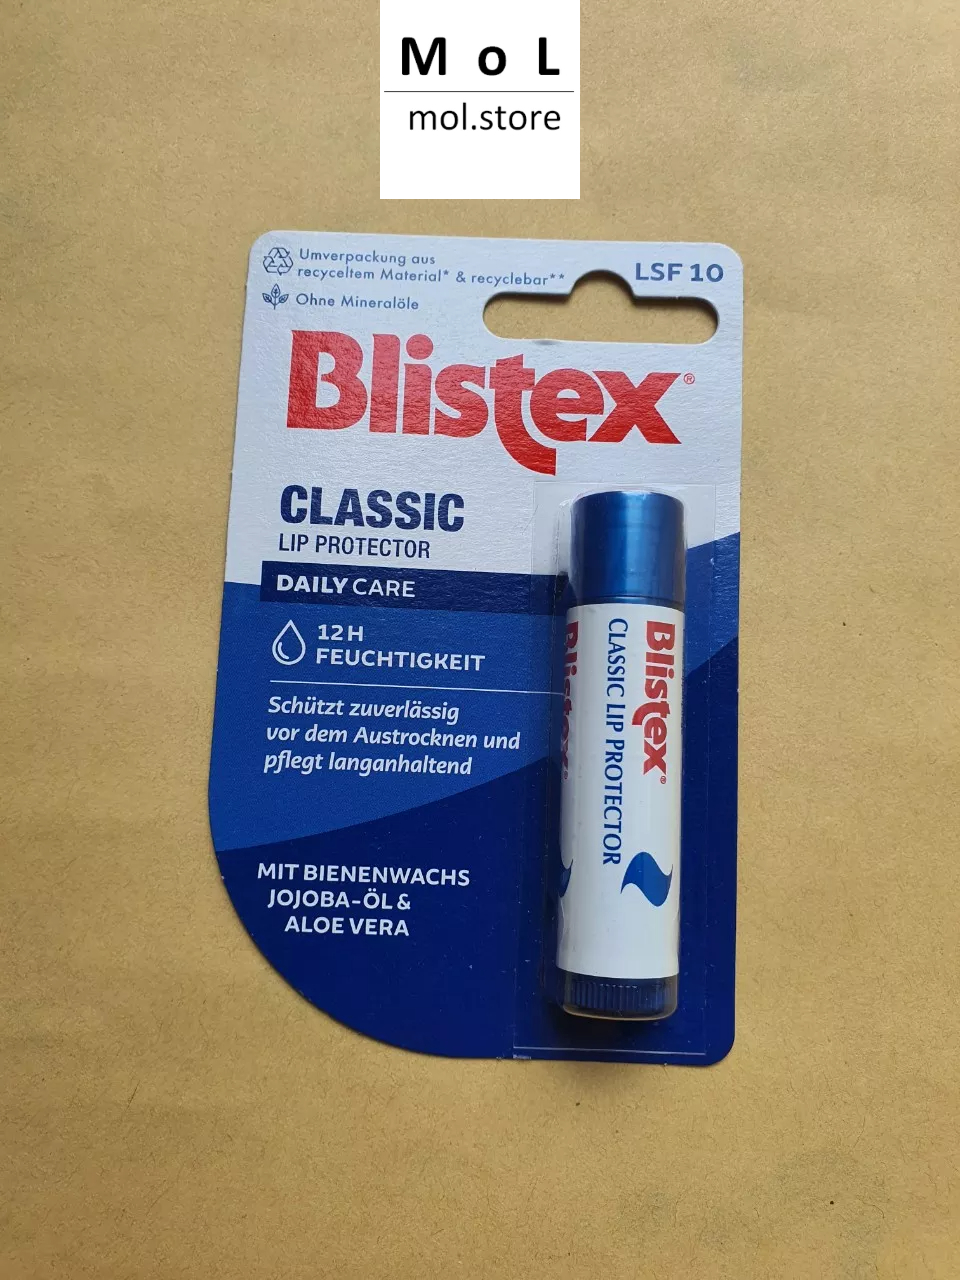 Son dưỡng môi Blistex cho môi khô, nứt nẻ Hàng chuẩn Đức đủ bill